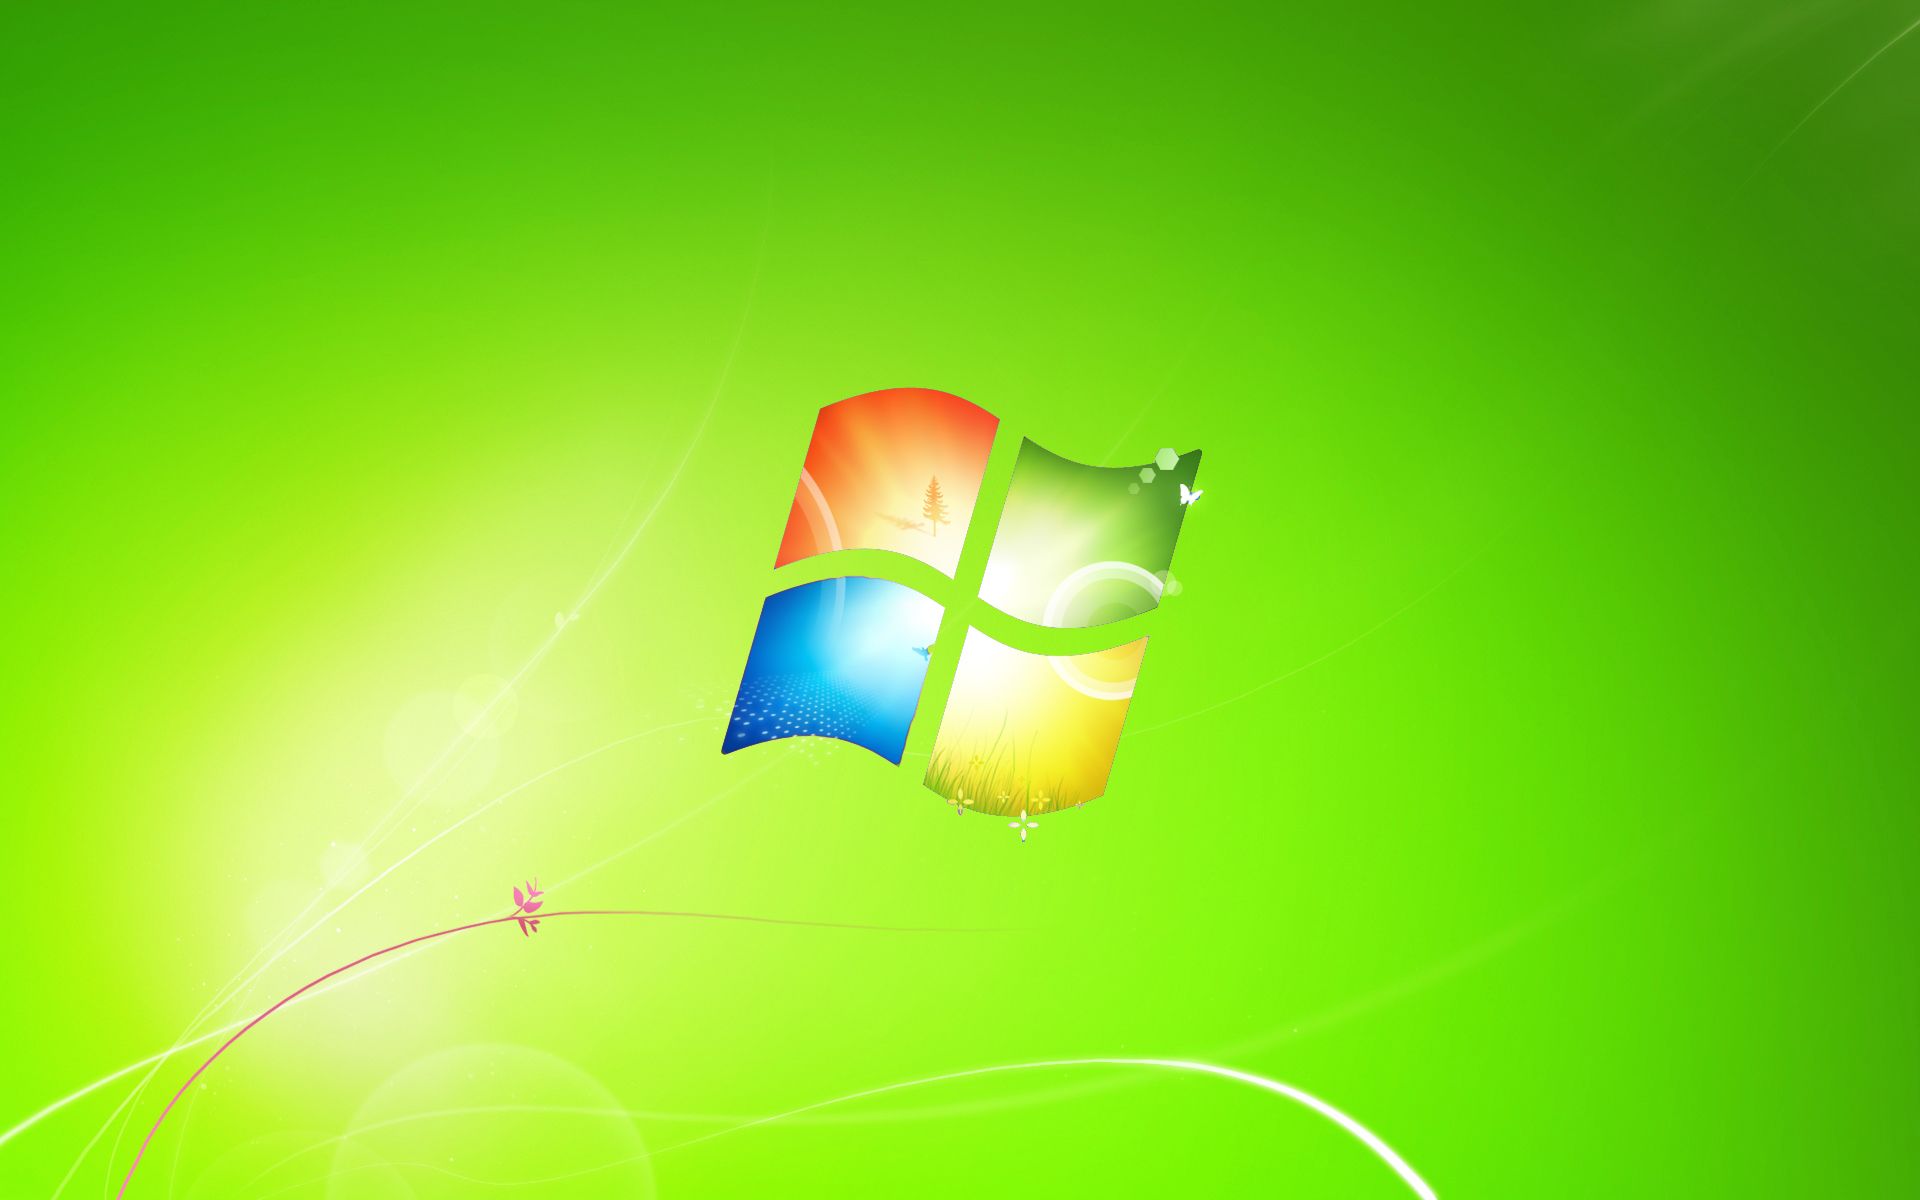 Windows 7 Green Wallpaper